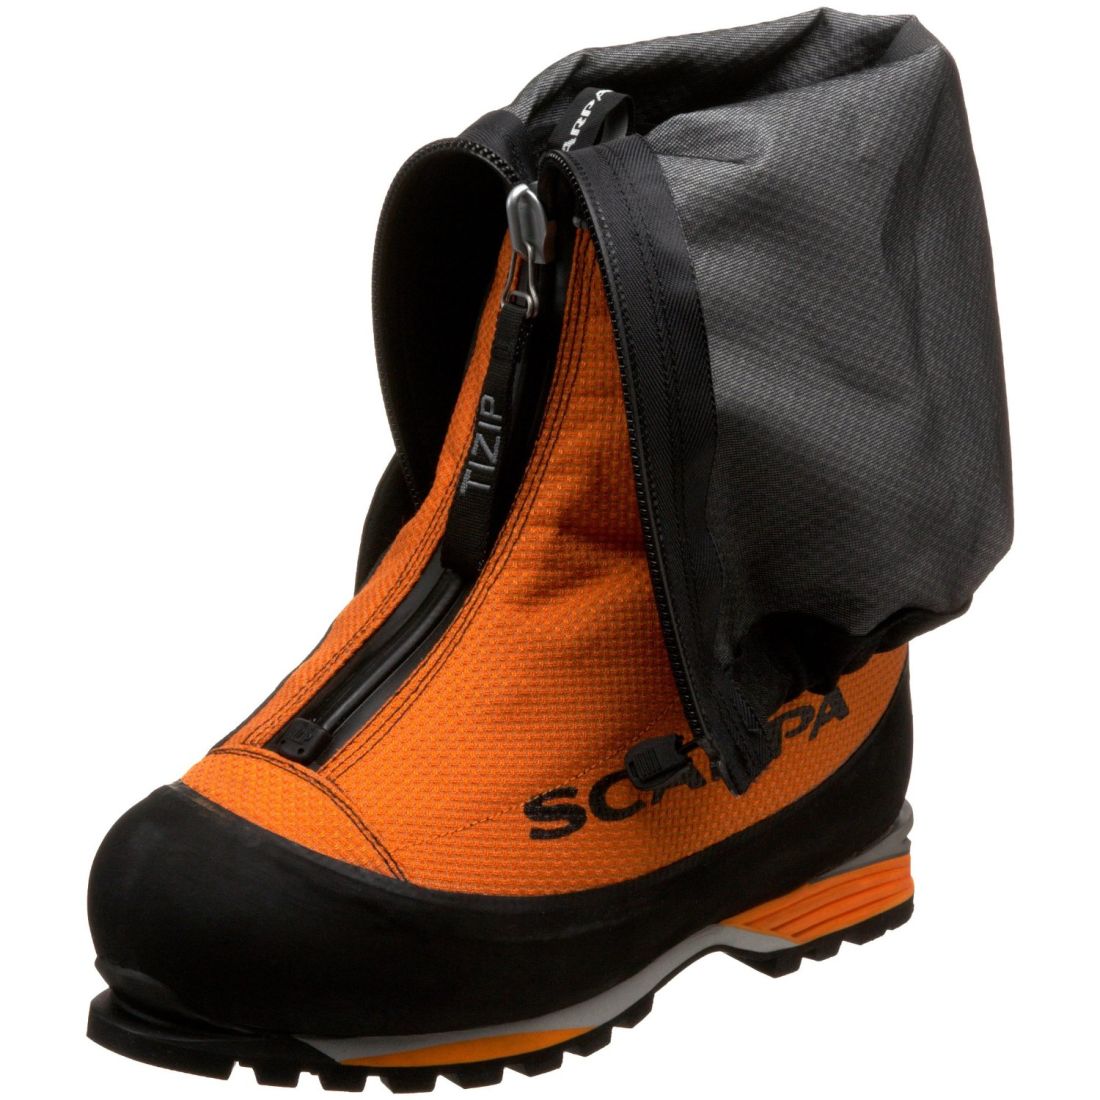 Scarpa Scarpa - Ботинки для высотных восхождений Phantom 8000